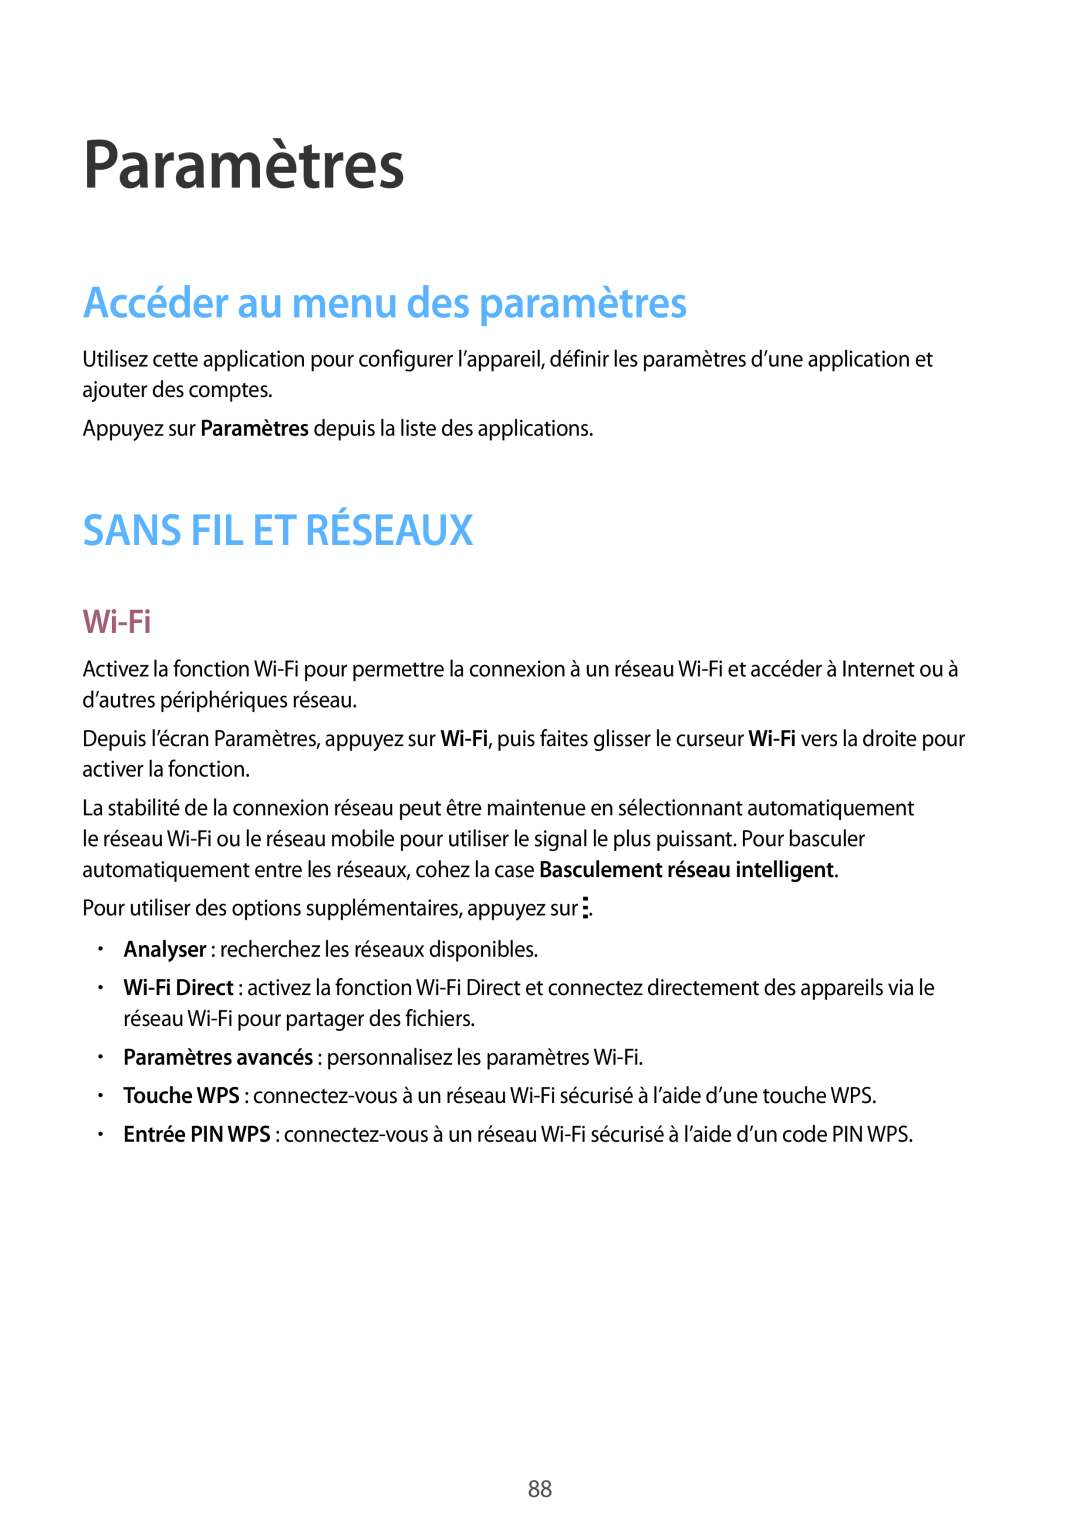 Samsung SM-G130HZANFTM, SM-G130HZWNXEF manual Paramètres, Accéder au menu des paramètres, Sans Fil Et Réseaux, Wi-Fi 